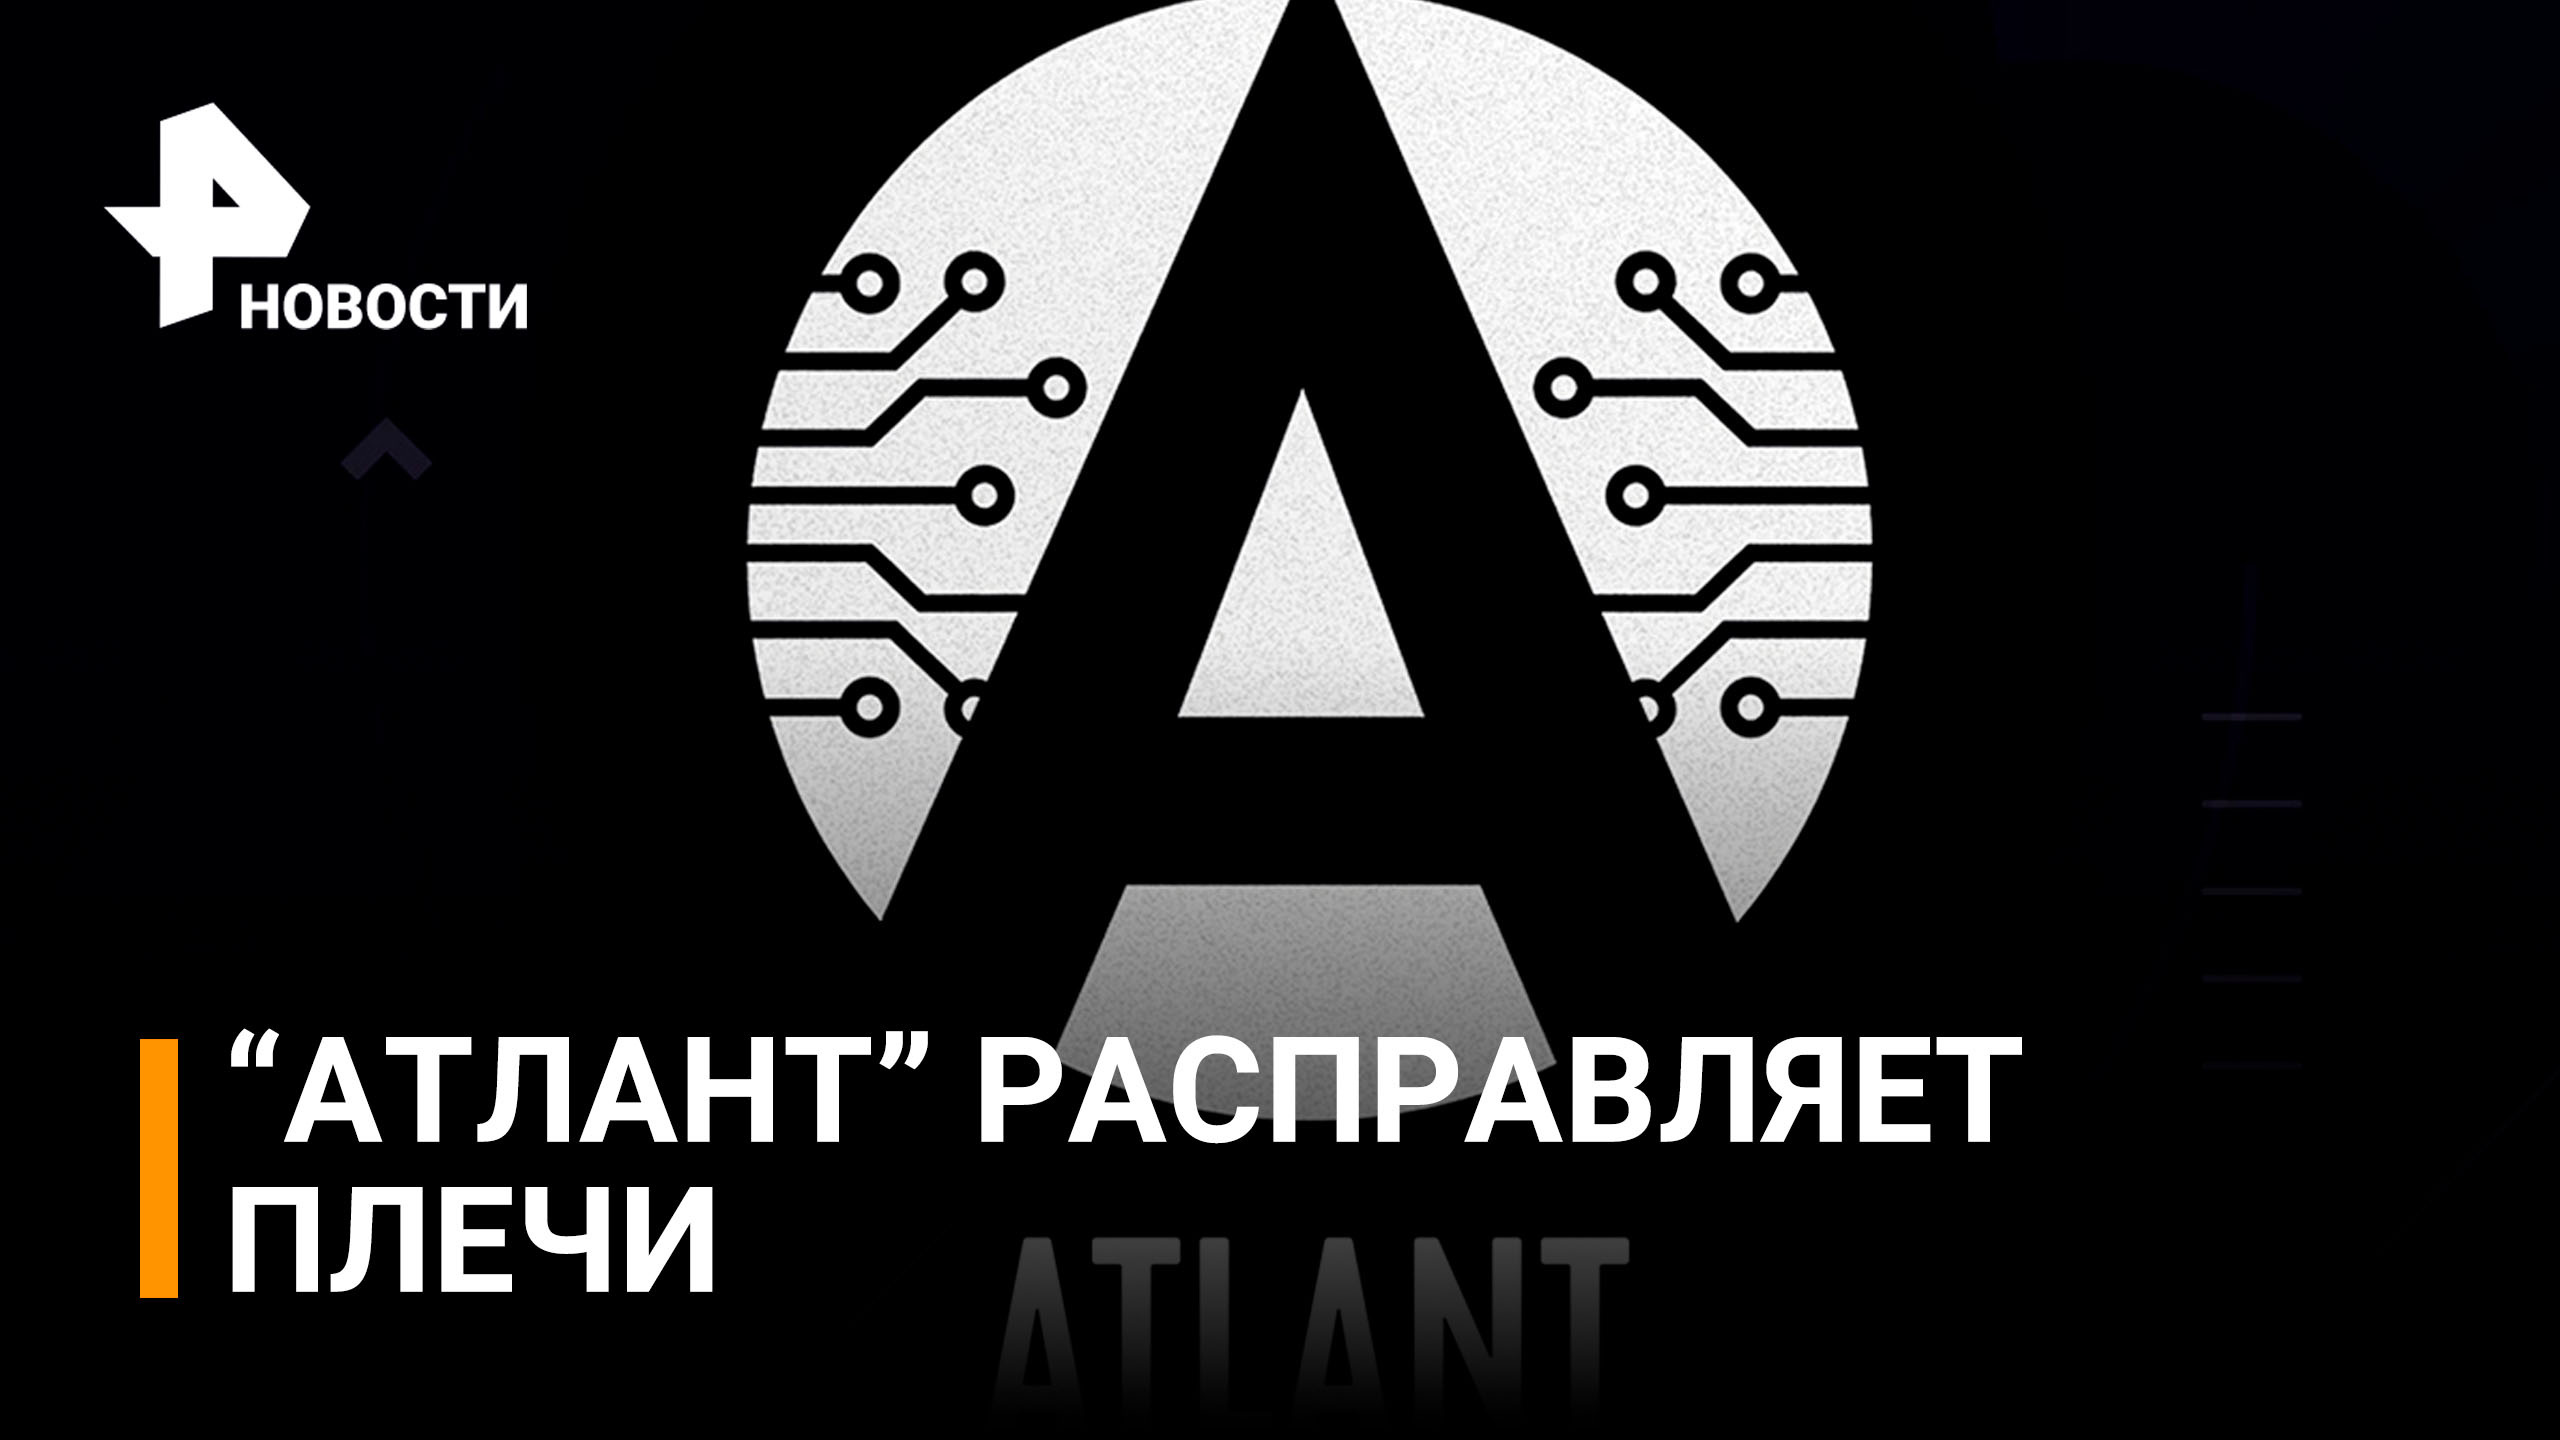 Российская ОС "Атлант" оказалась дешевле и удобнее зарубежных аналогов / РЕН Новости